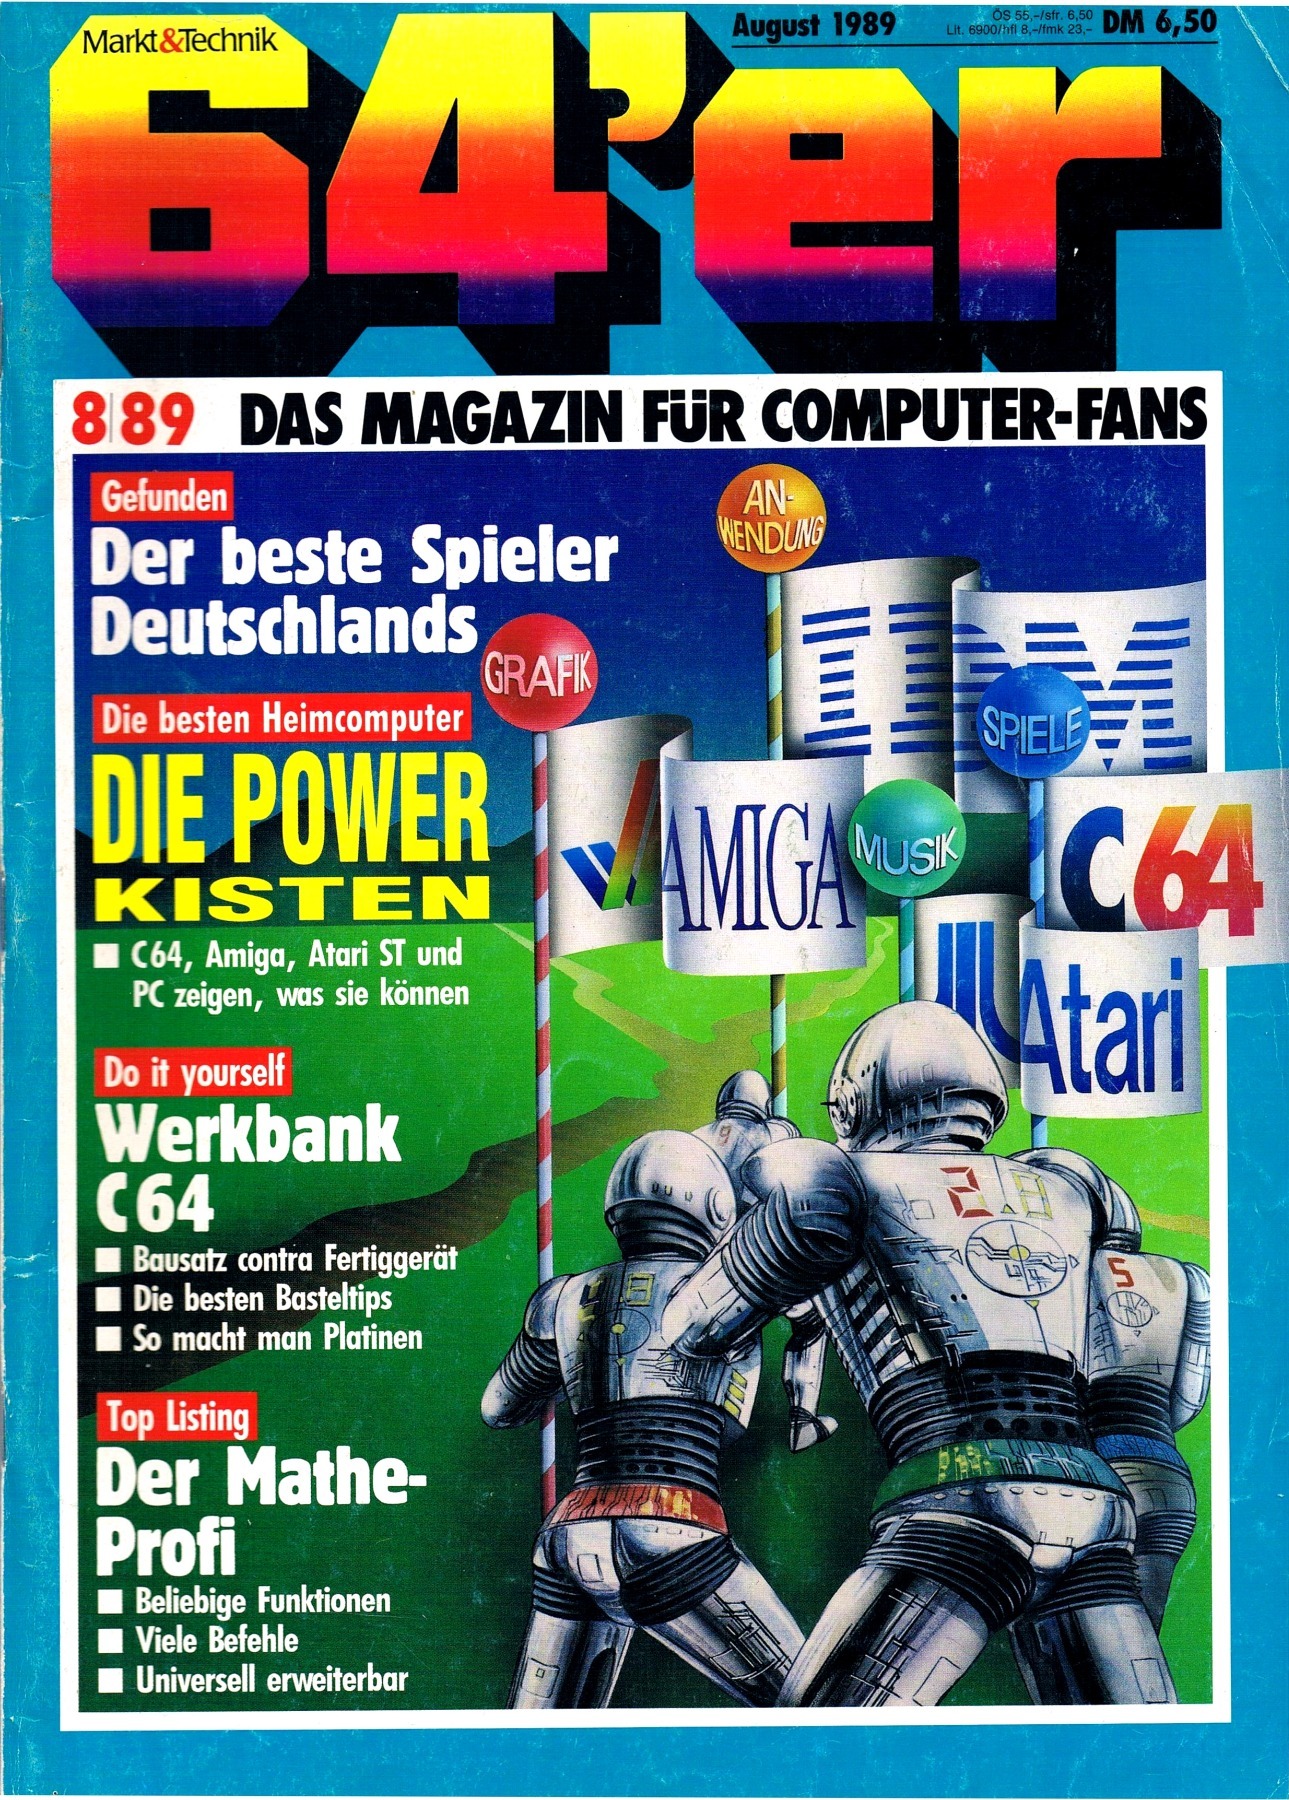 64er Magazin Ausgabe 8/89 1989